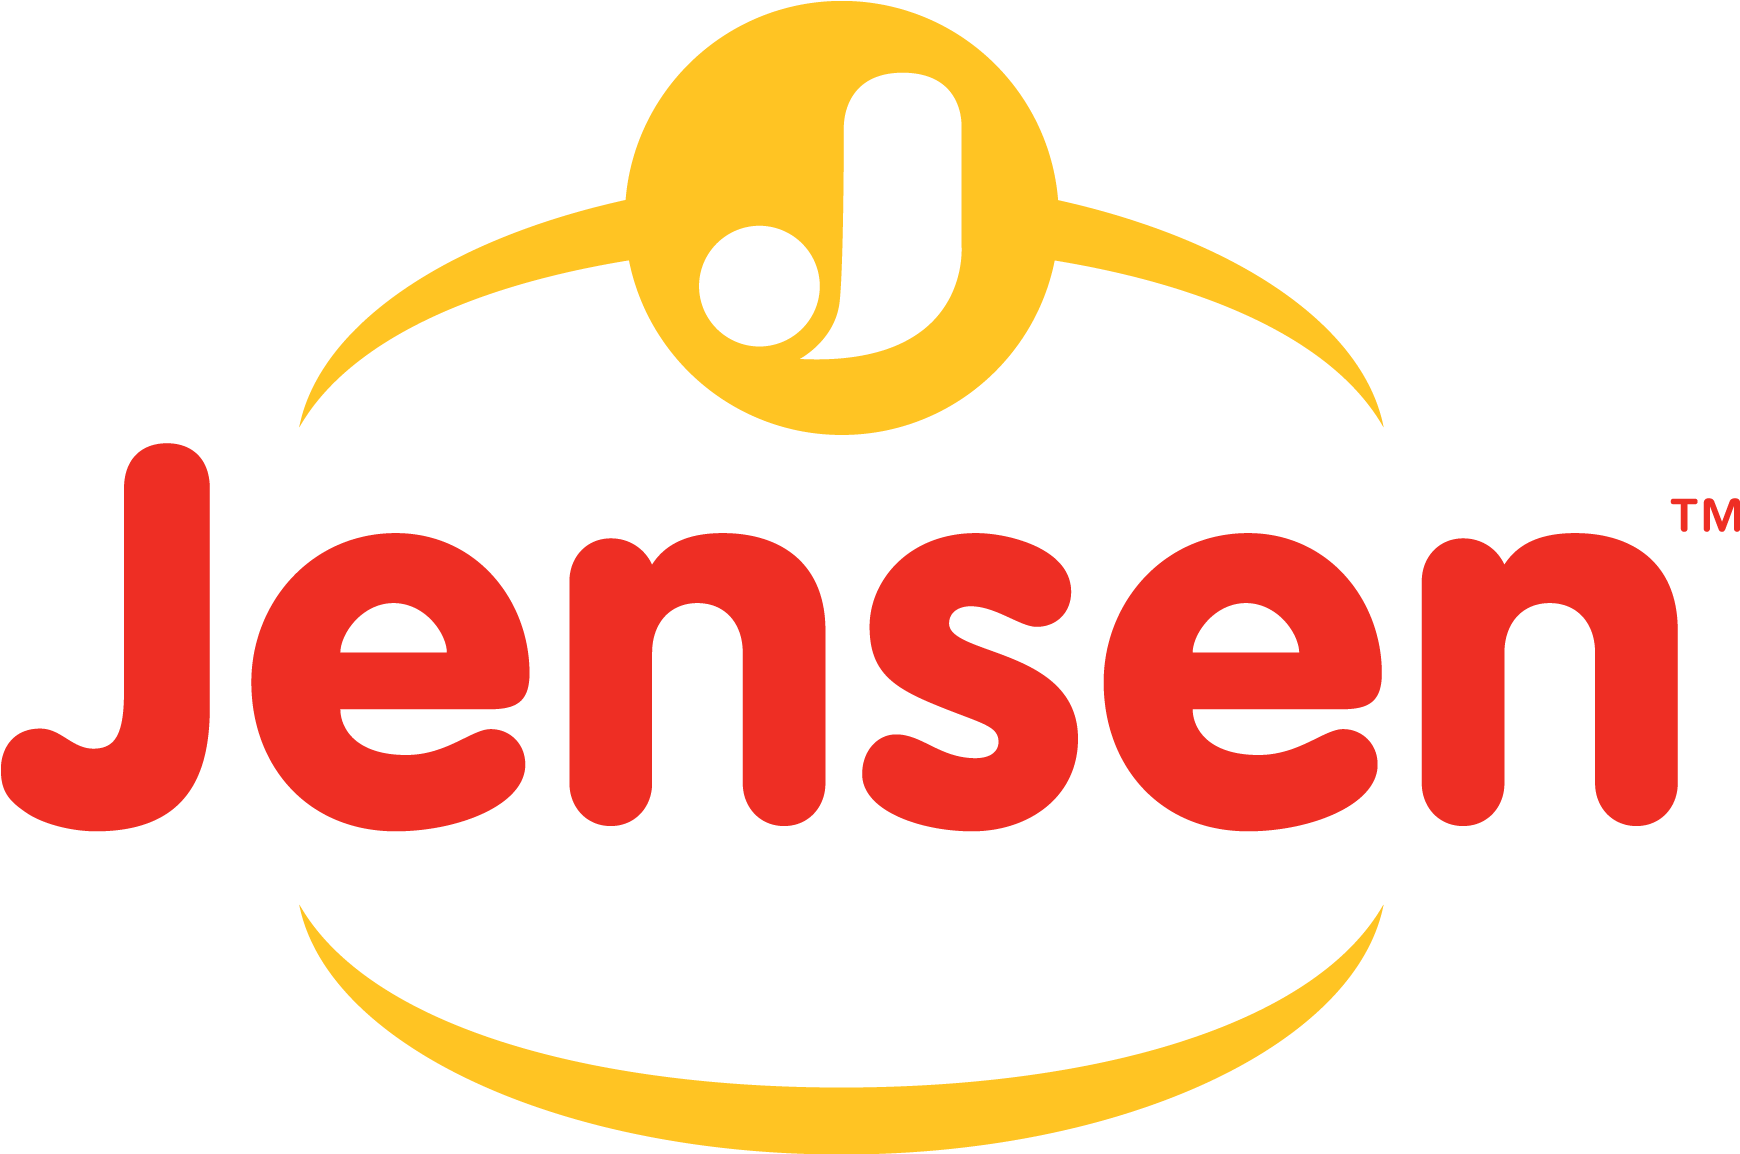 Jensen Meat Logo (1800x1200)